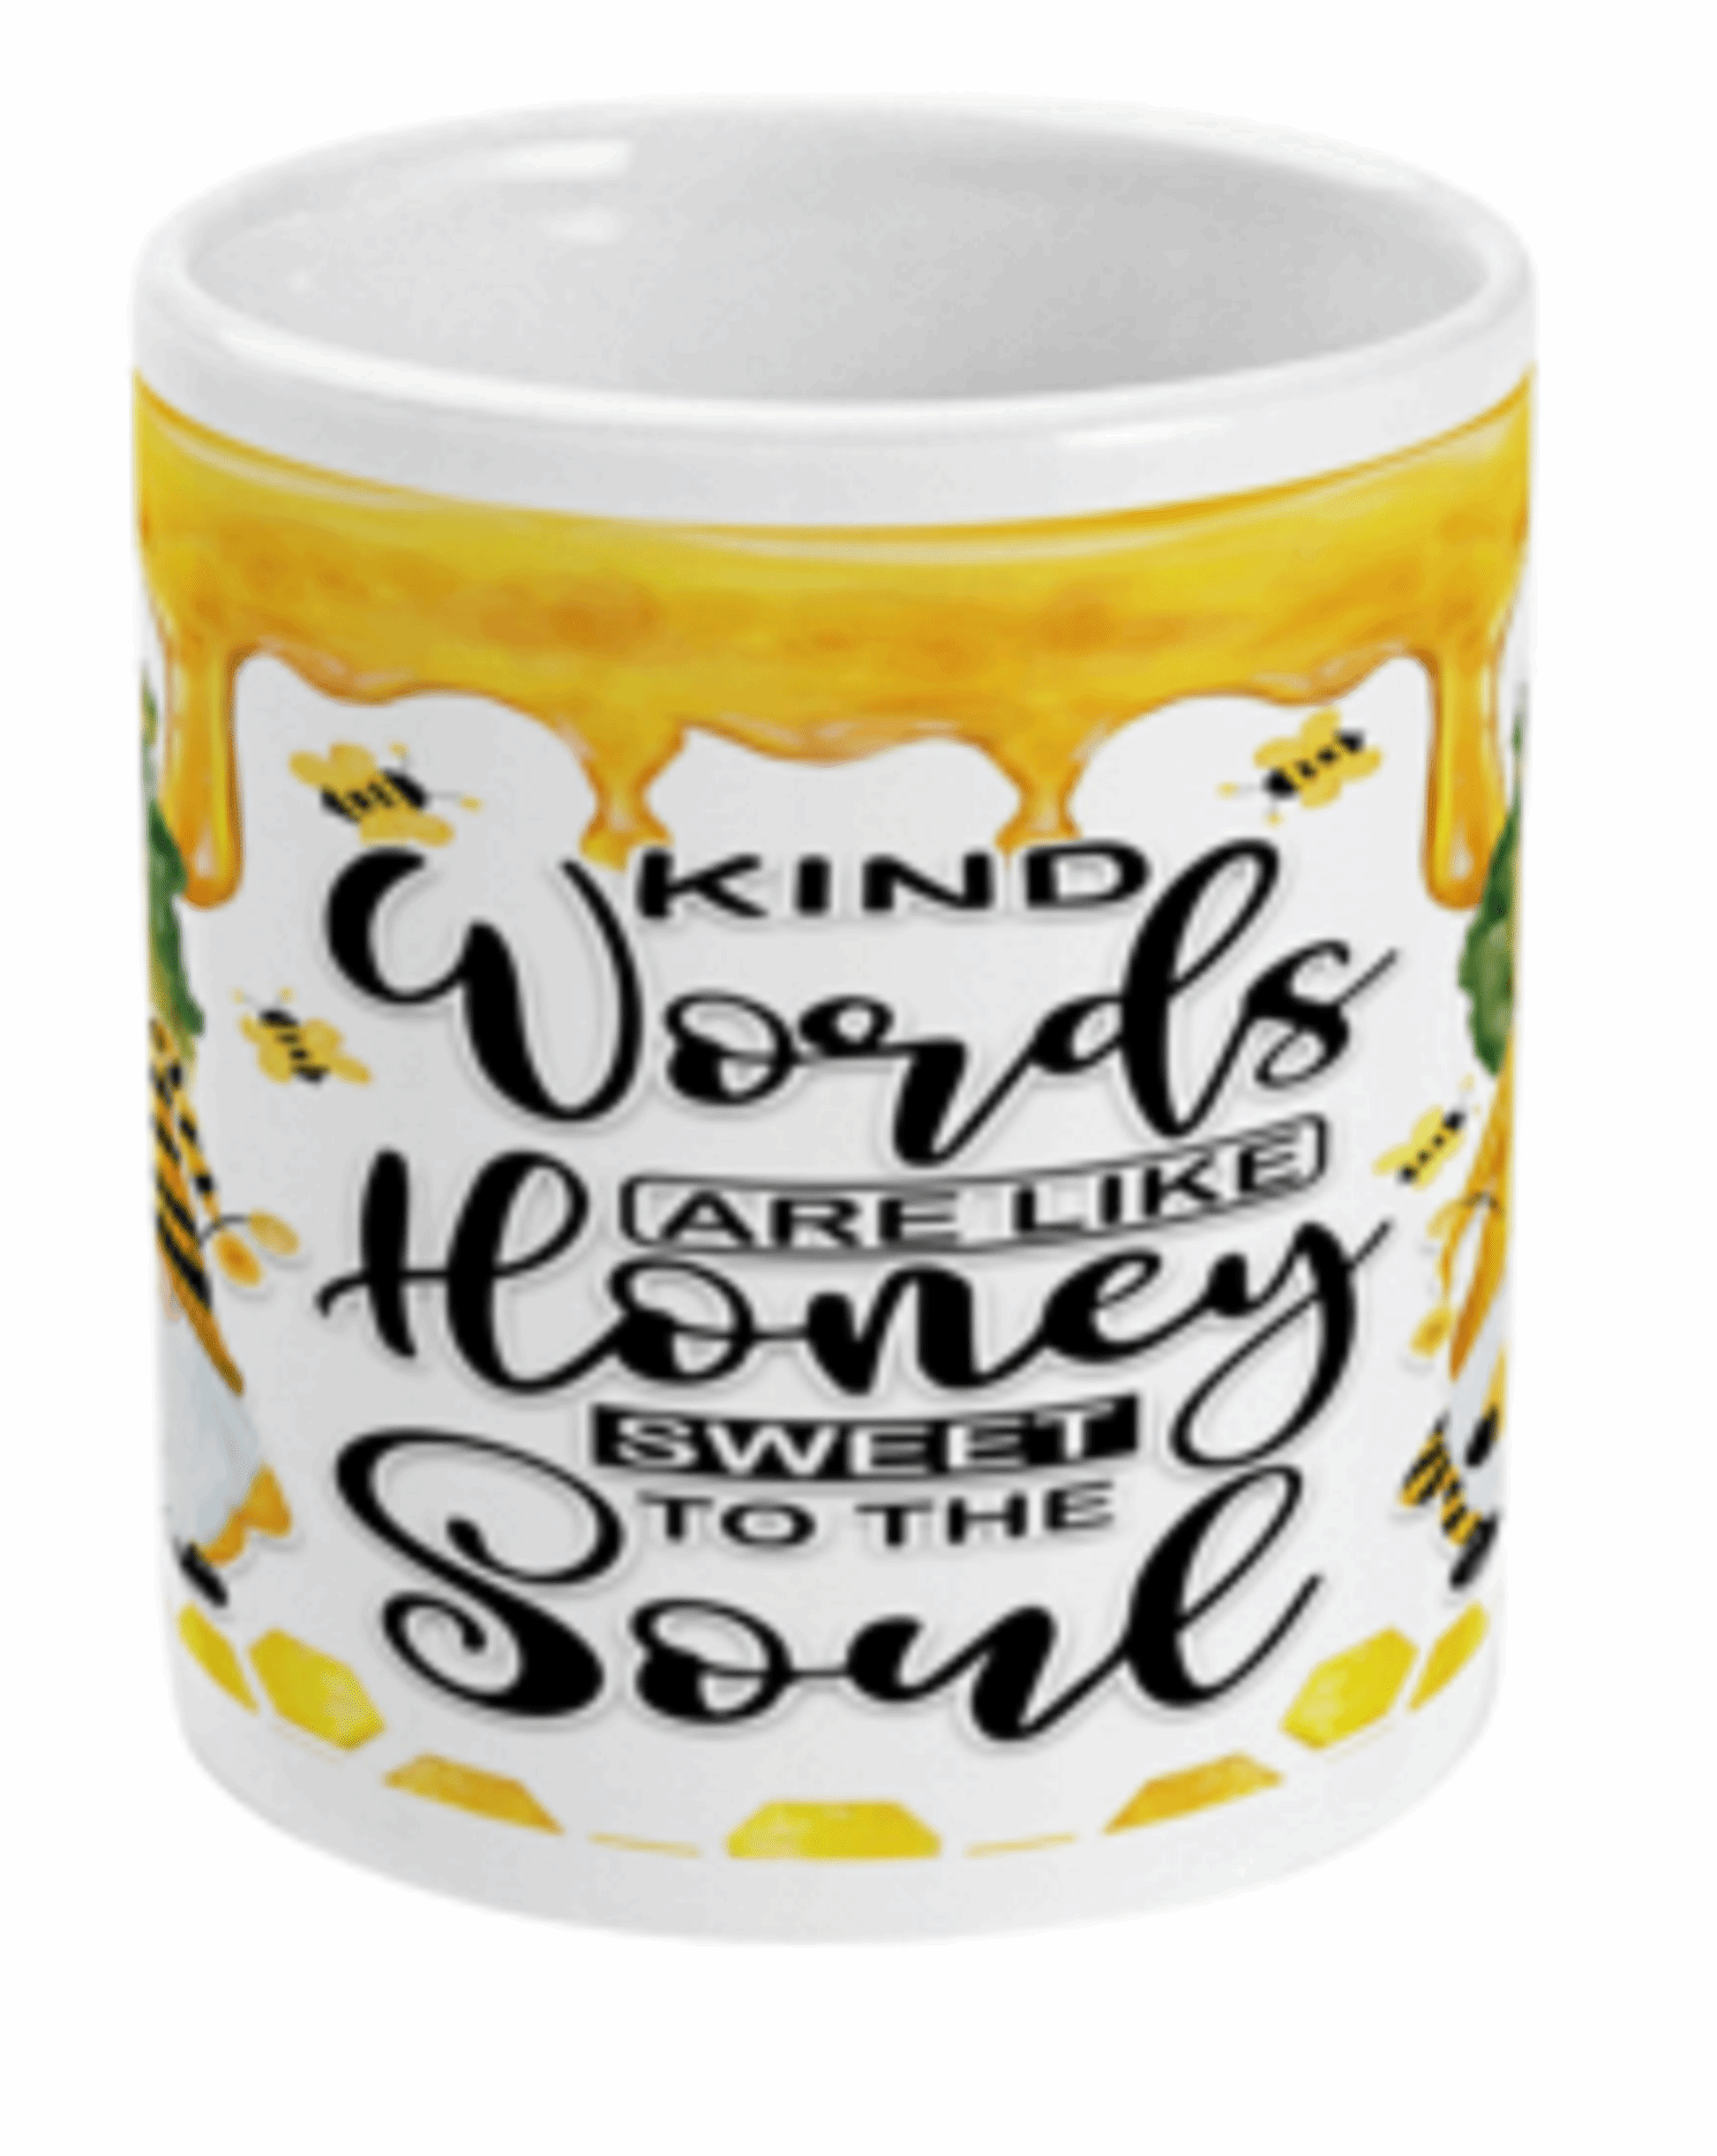  Kind Words Are Like Honey Coffee Mug by Free Spirit Accessories sold by Free Spirit Accessories